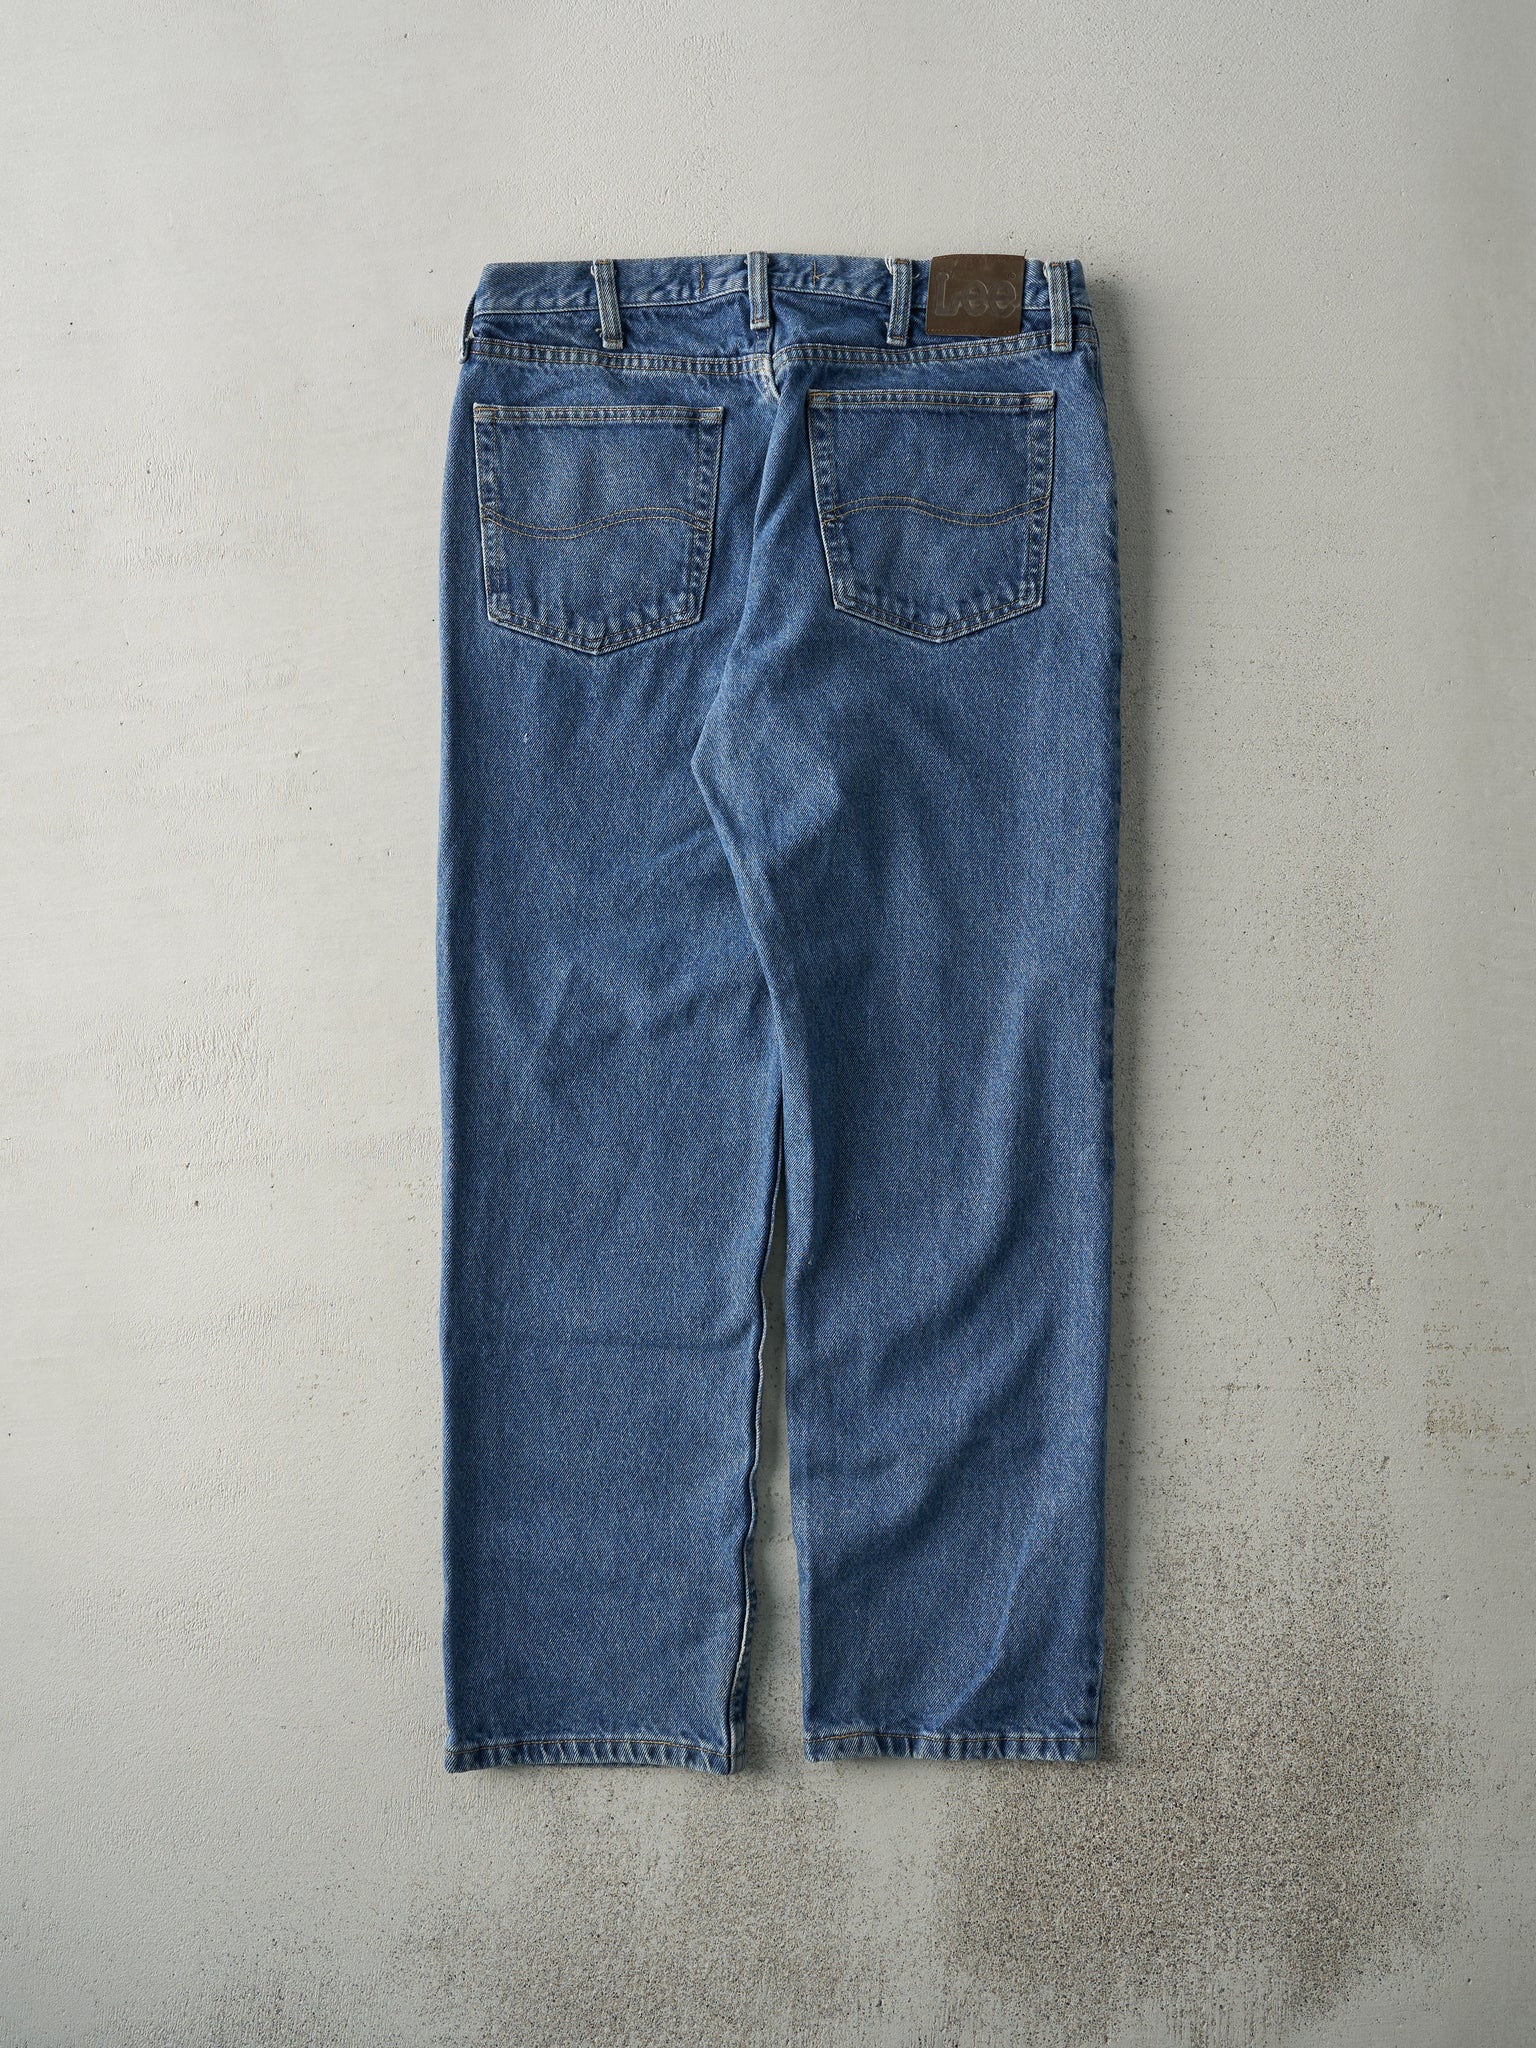 Vintage 90s Mid Wash Lee Regular Fit Jeans (33x29)